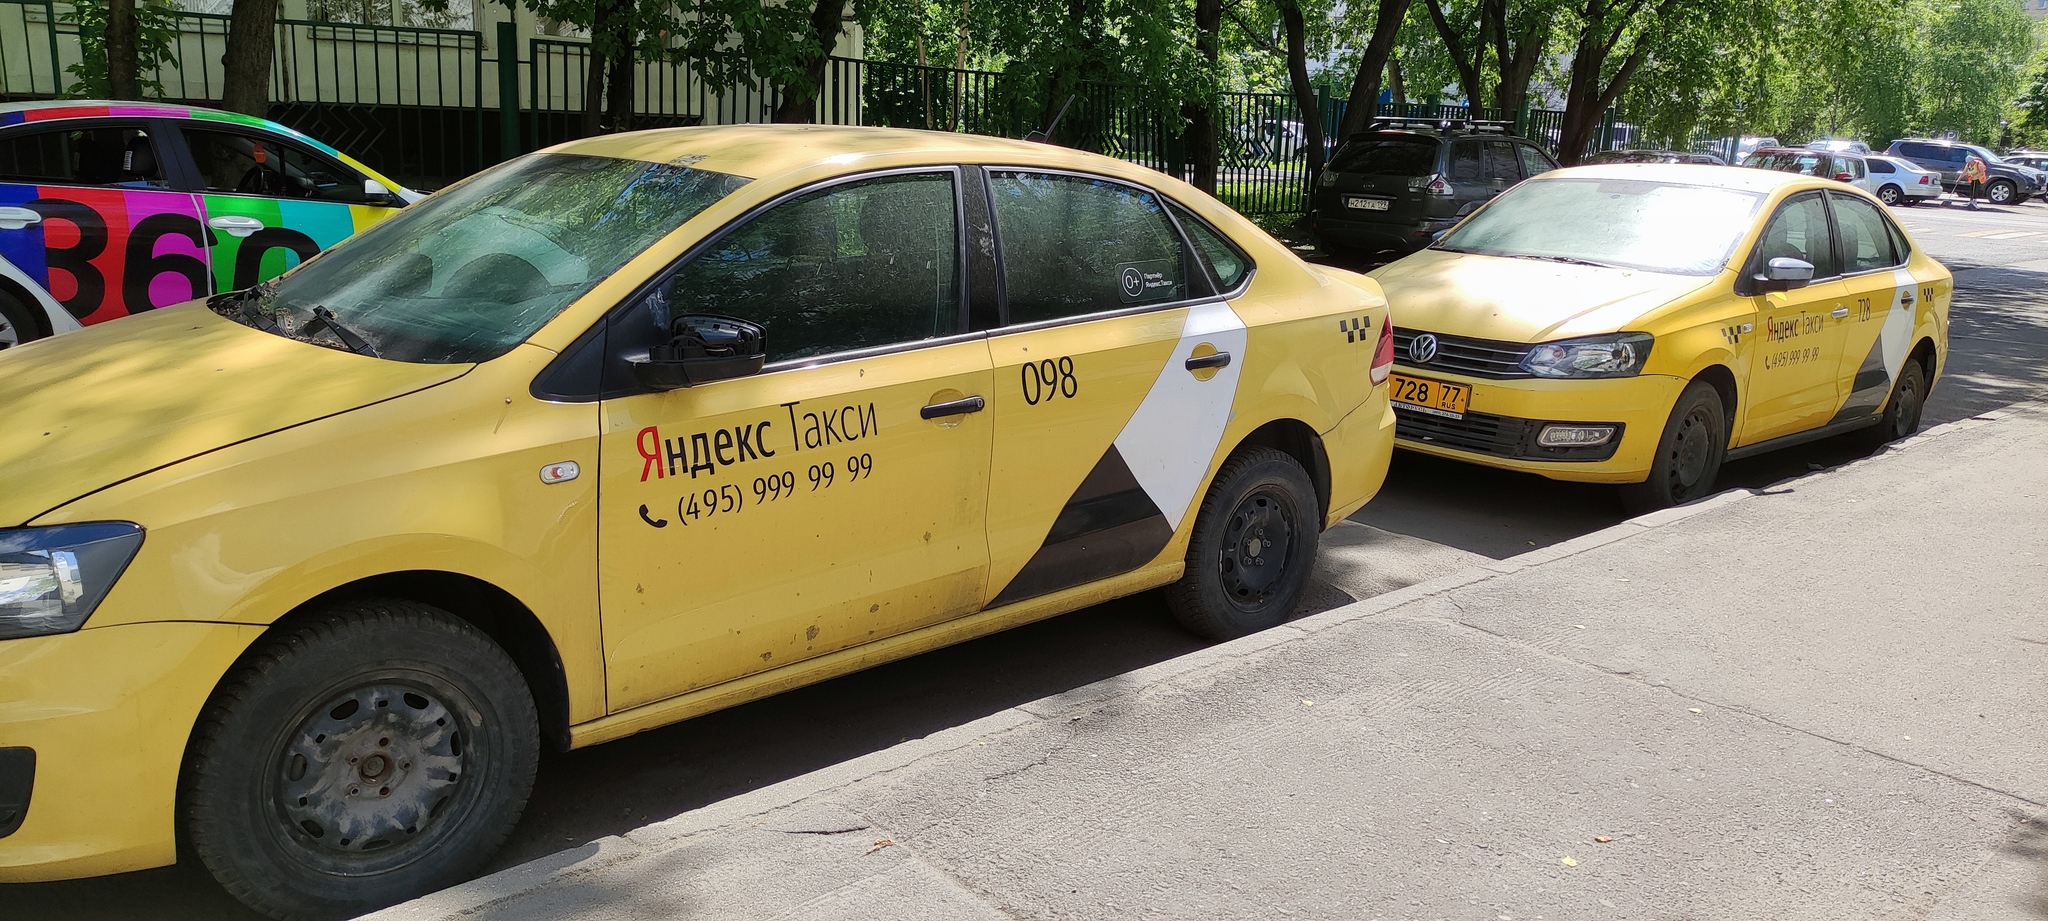 Яндекс такси 999-99-99